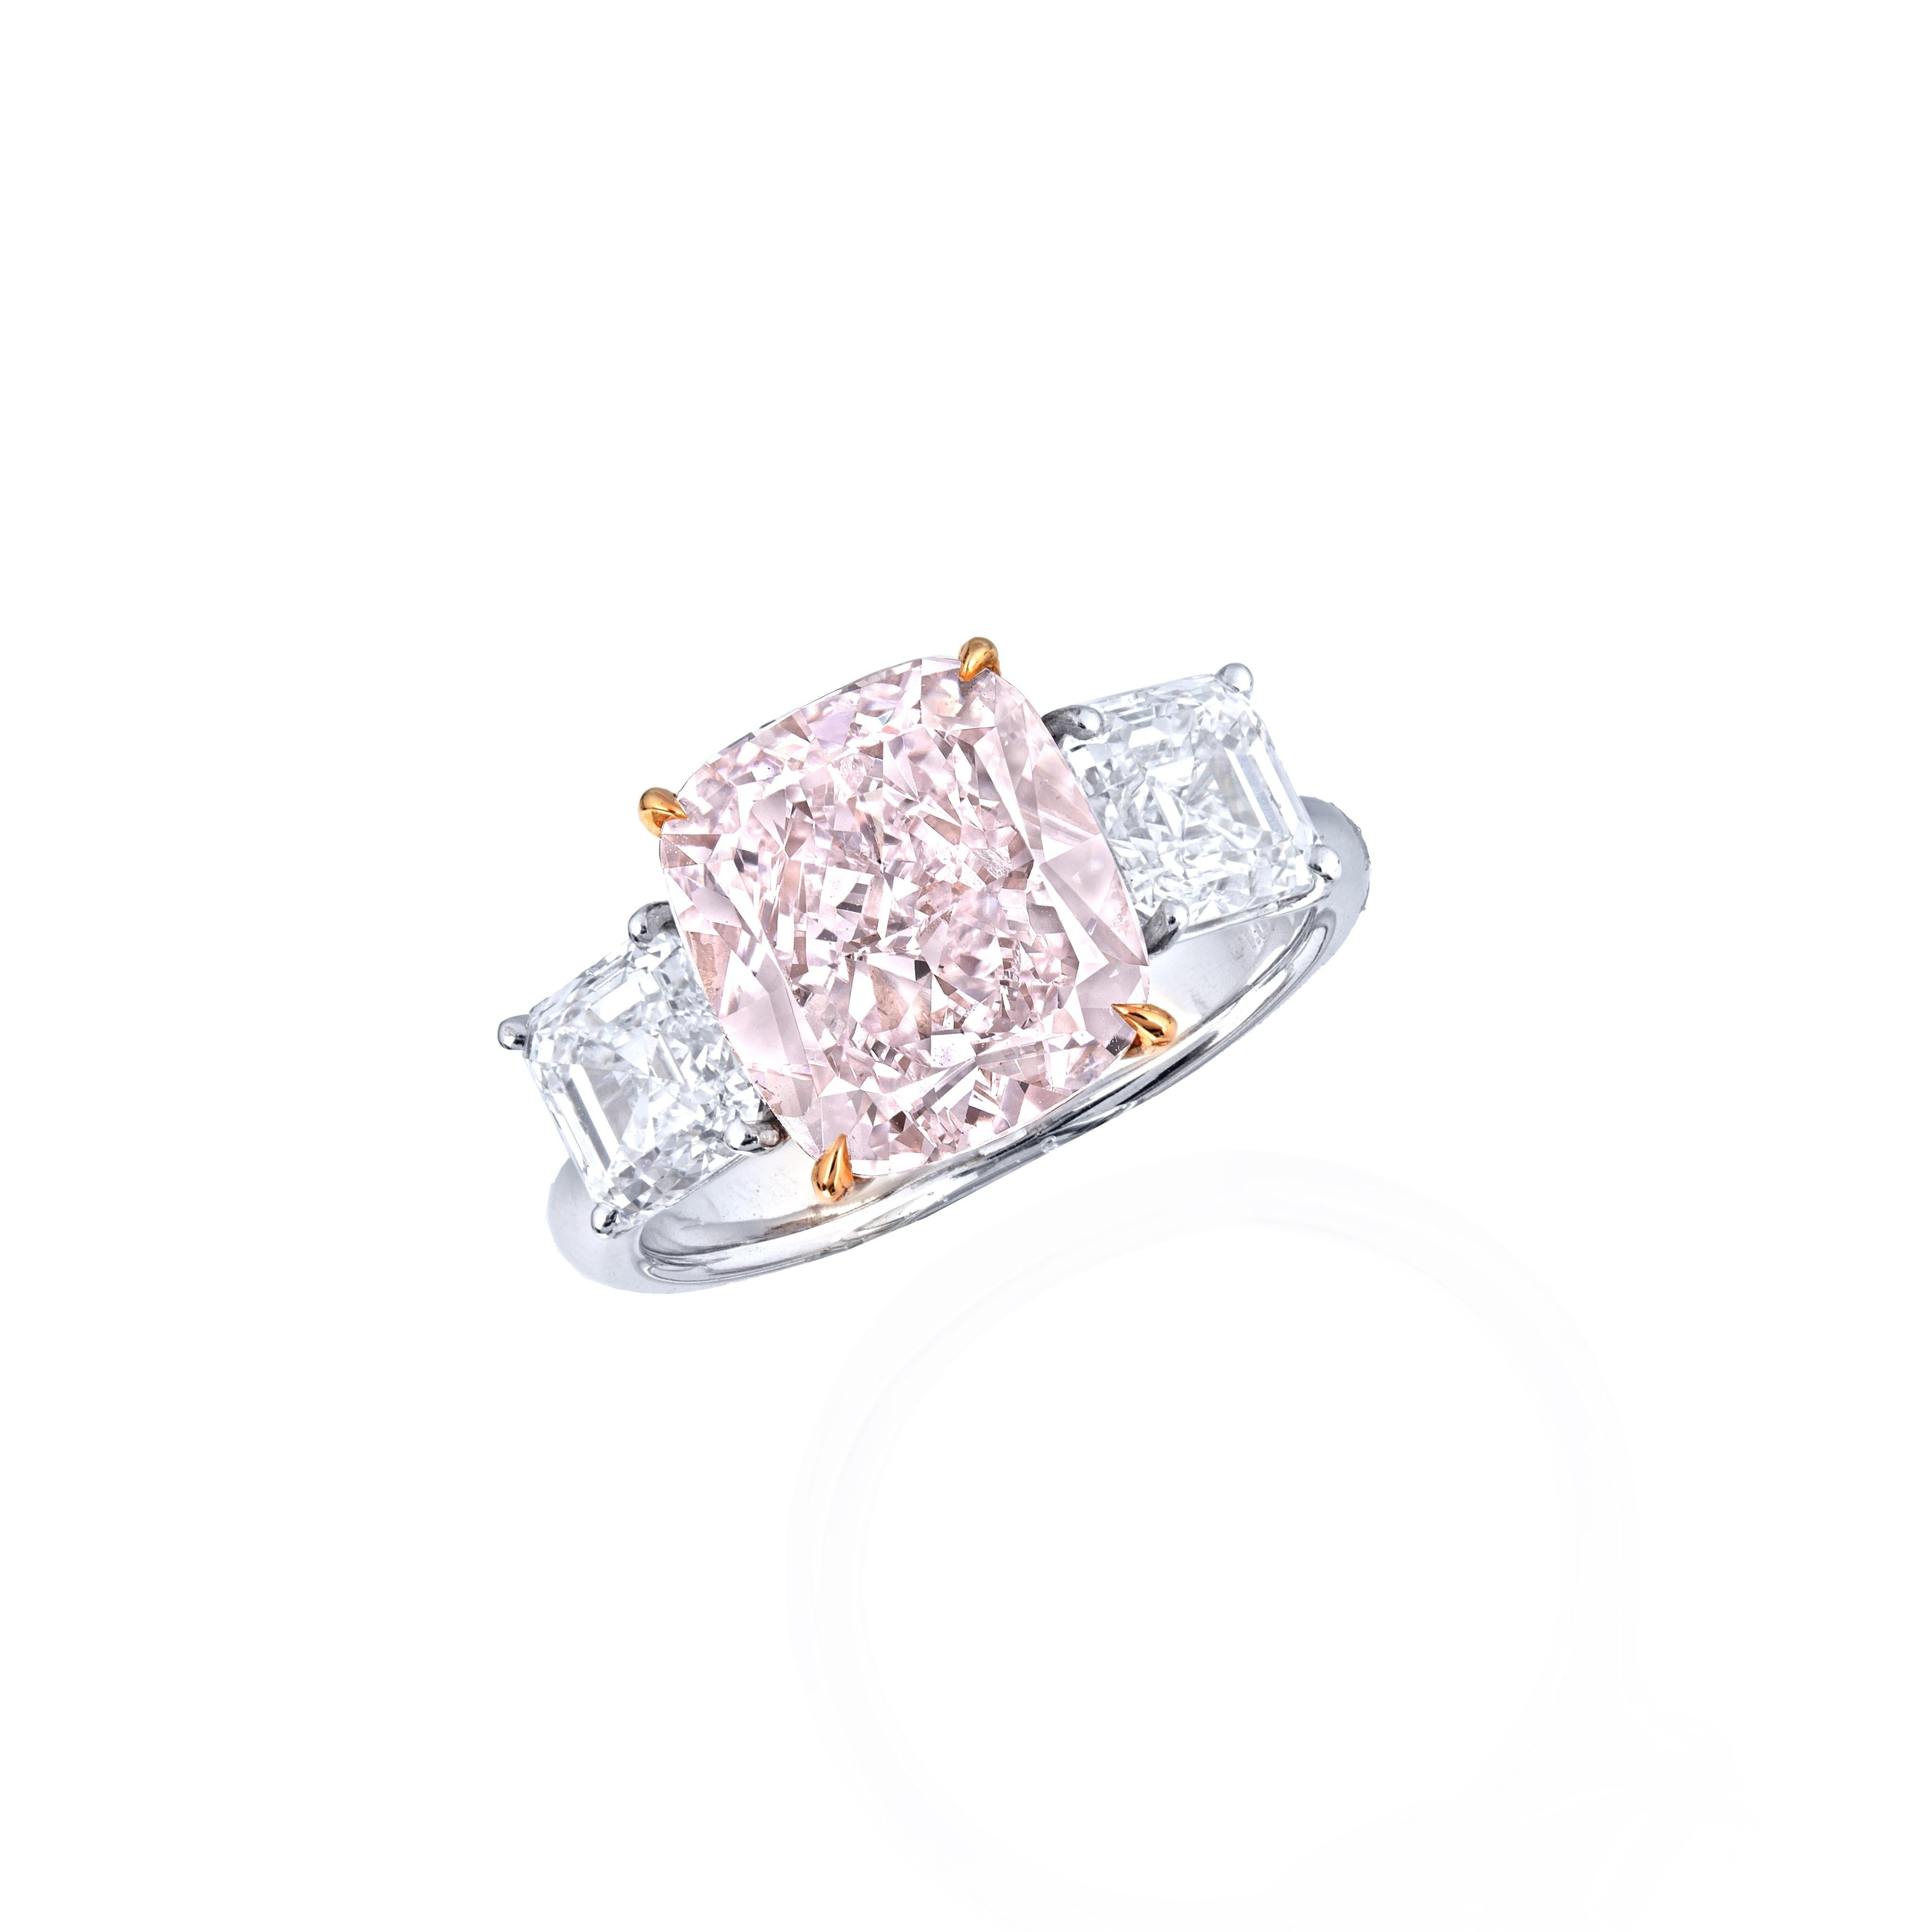 Emilio Jewelry, un grossiste/détaillant bien connu et respecté situé sur l'emblématique Cinquième Avenue de New York, 
Au centre de cette magnifique bague d'investissement se trouve un diamant rose naturel certifié GIA pesant 5,50 carats. La monture